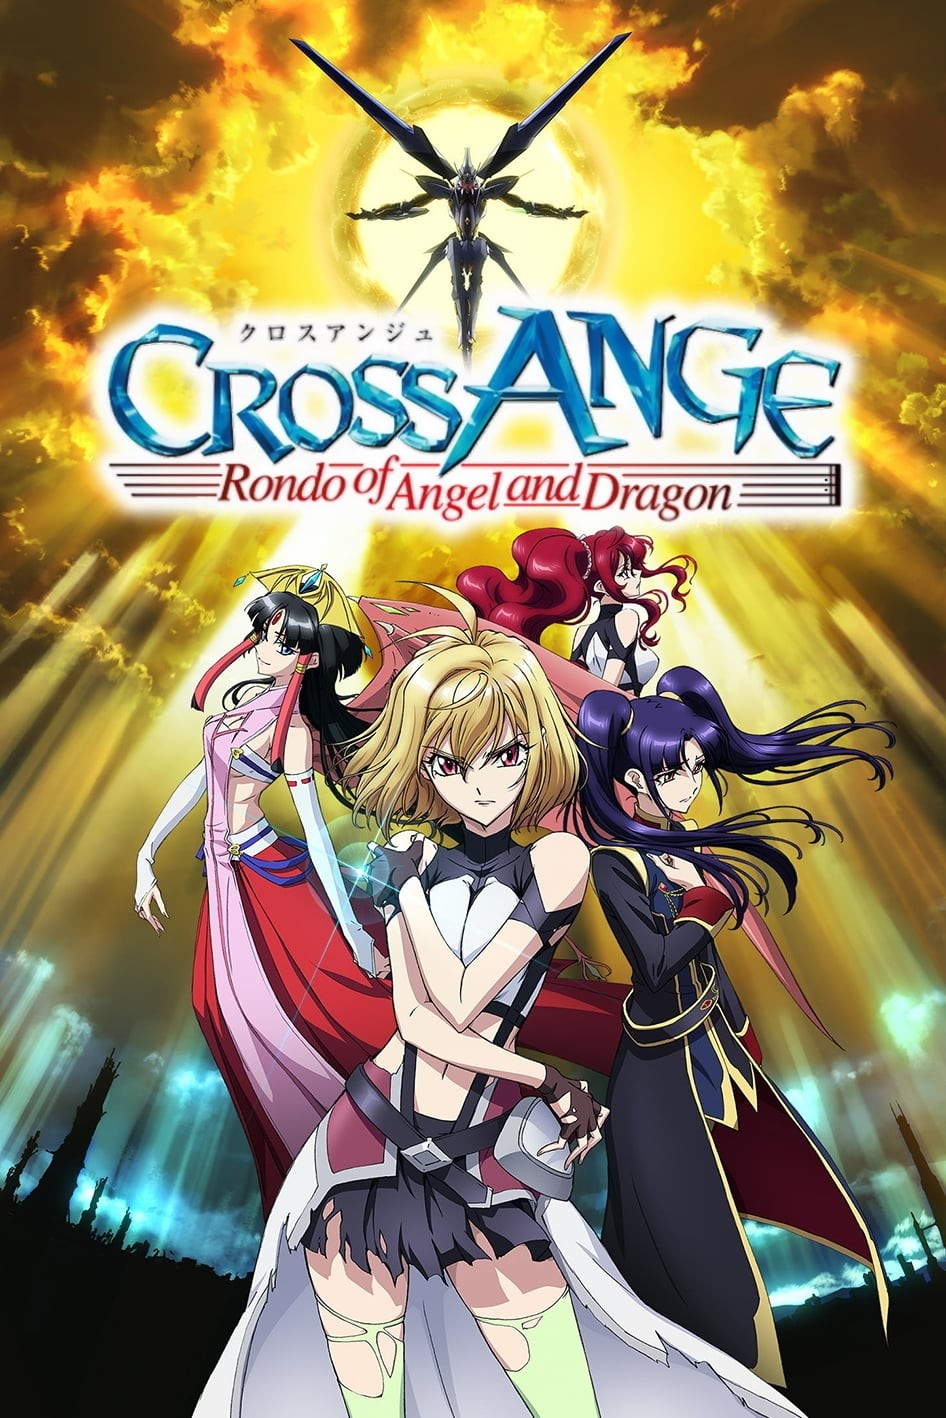 Anunciado Blu-ray BOX de Cross Ange: Tenshi to Ryuu no Rondo